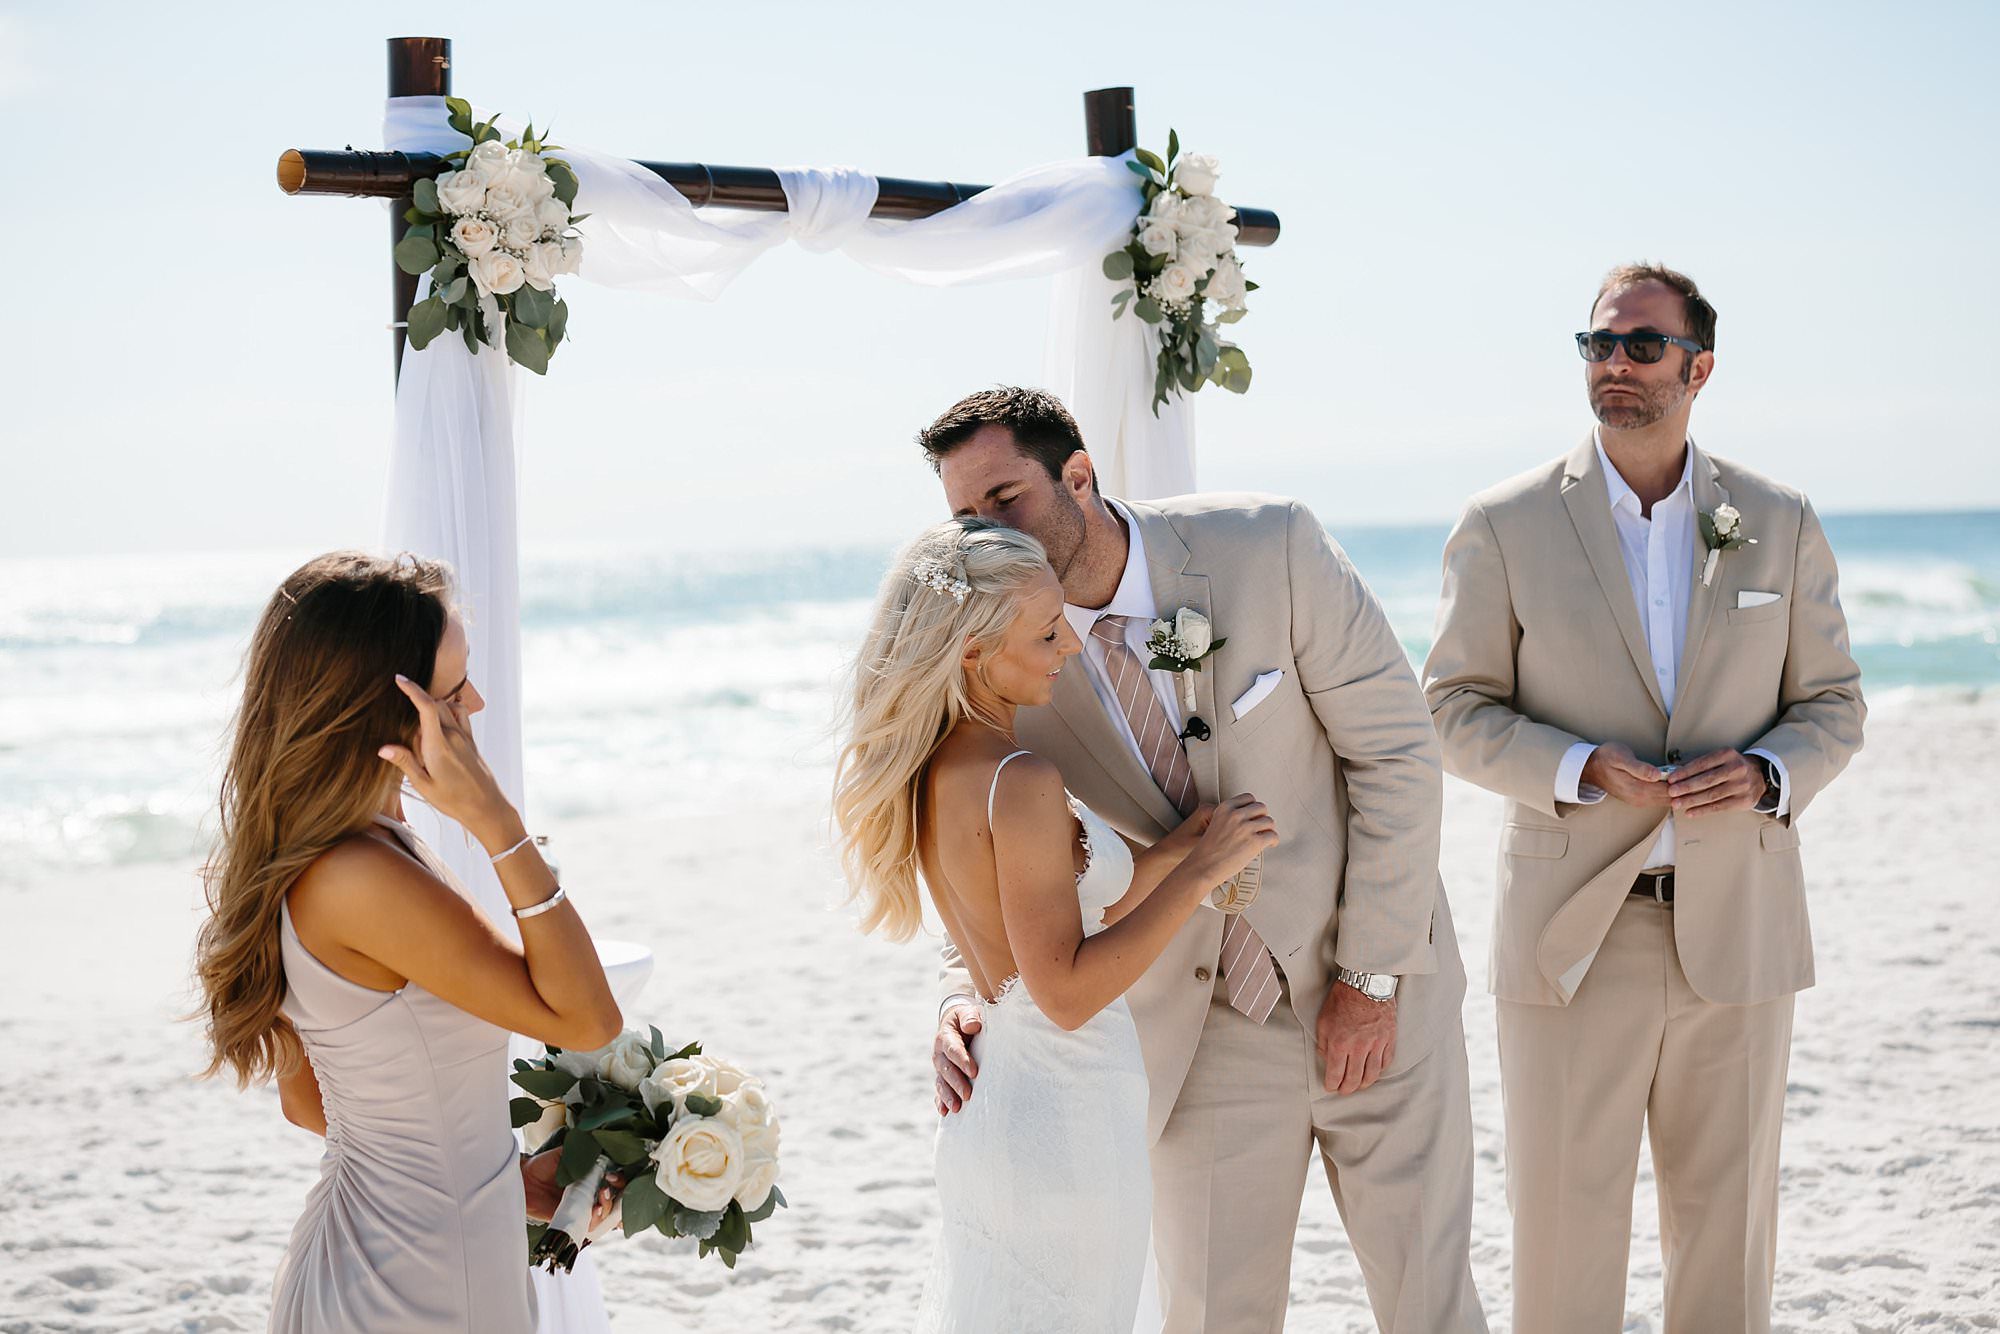 Vow exchange at beach wedding at Henderson Beach State Park